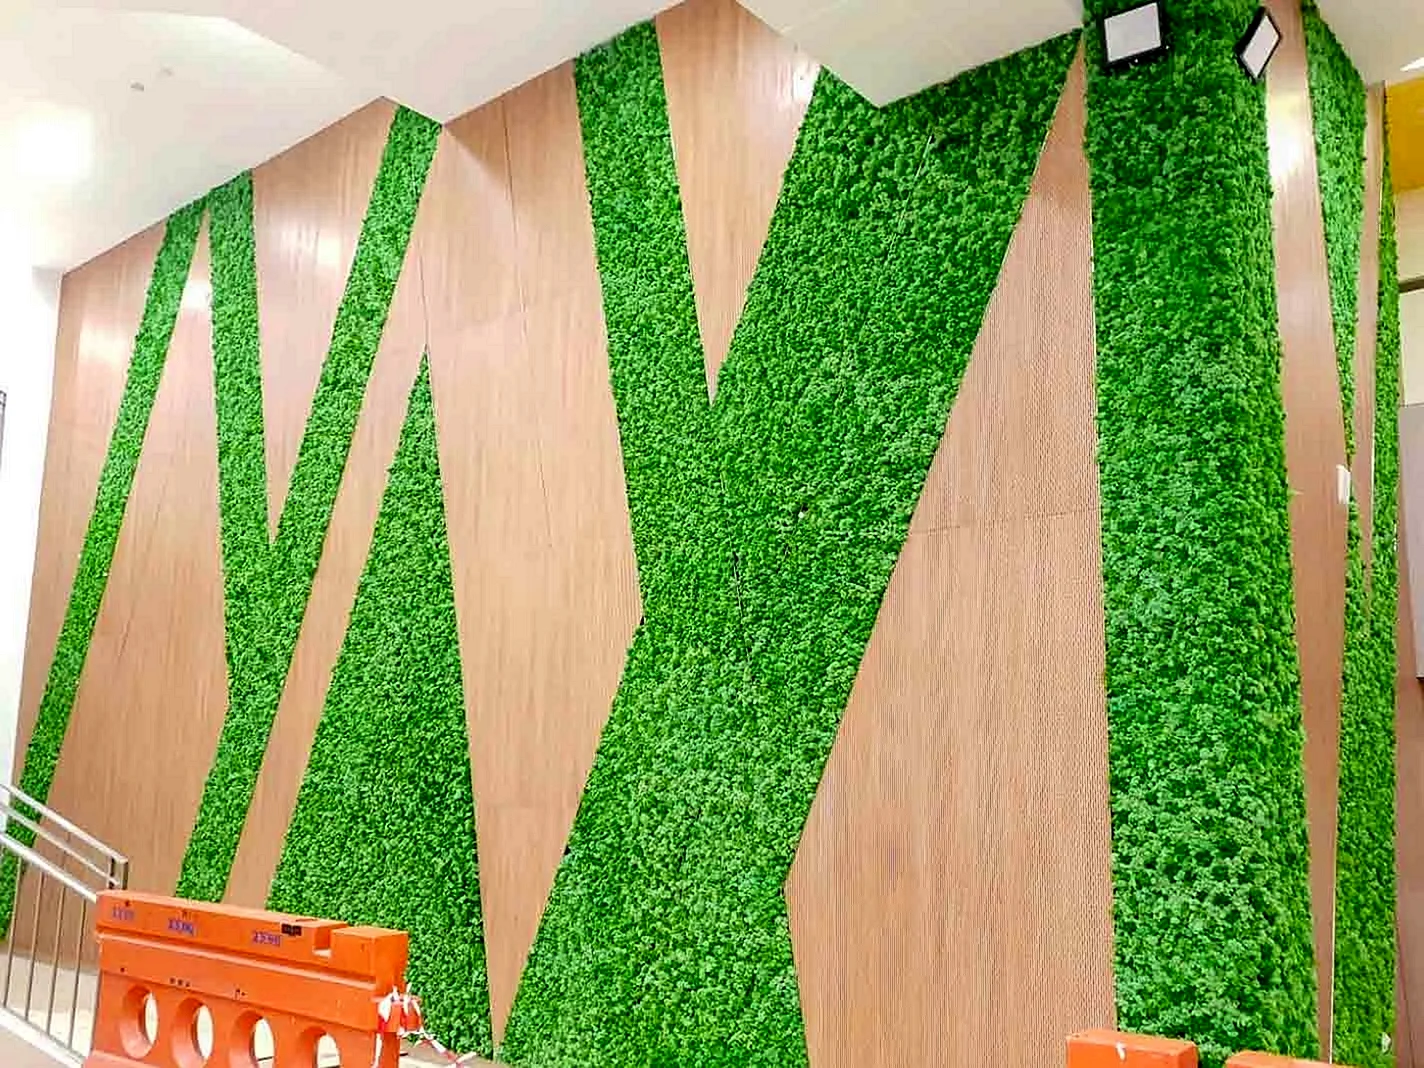 Grass Wall Wallpaper